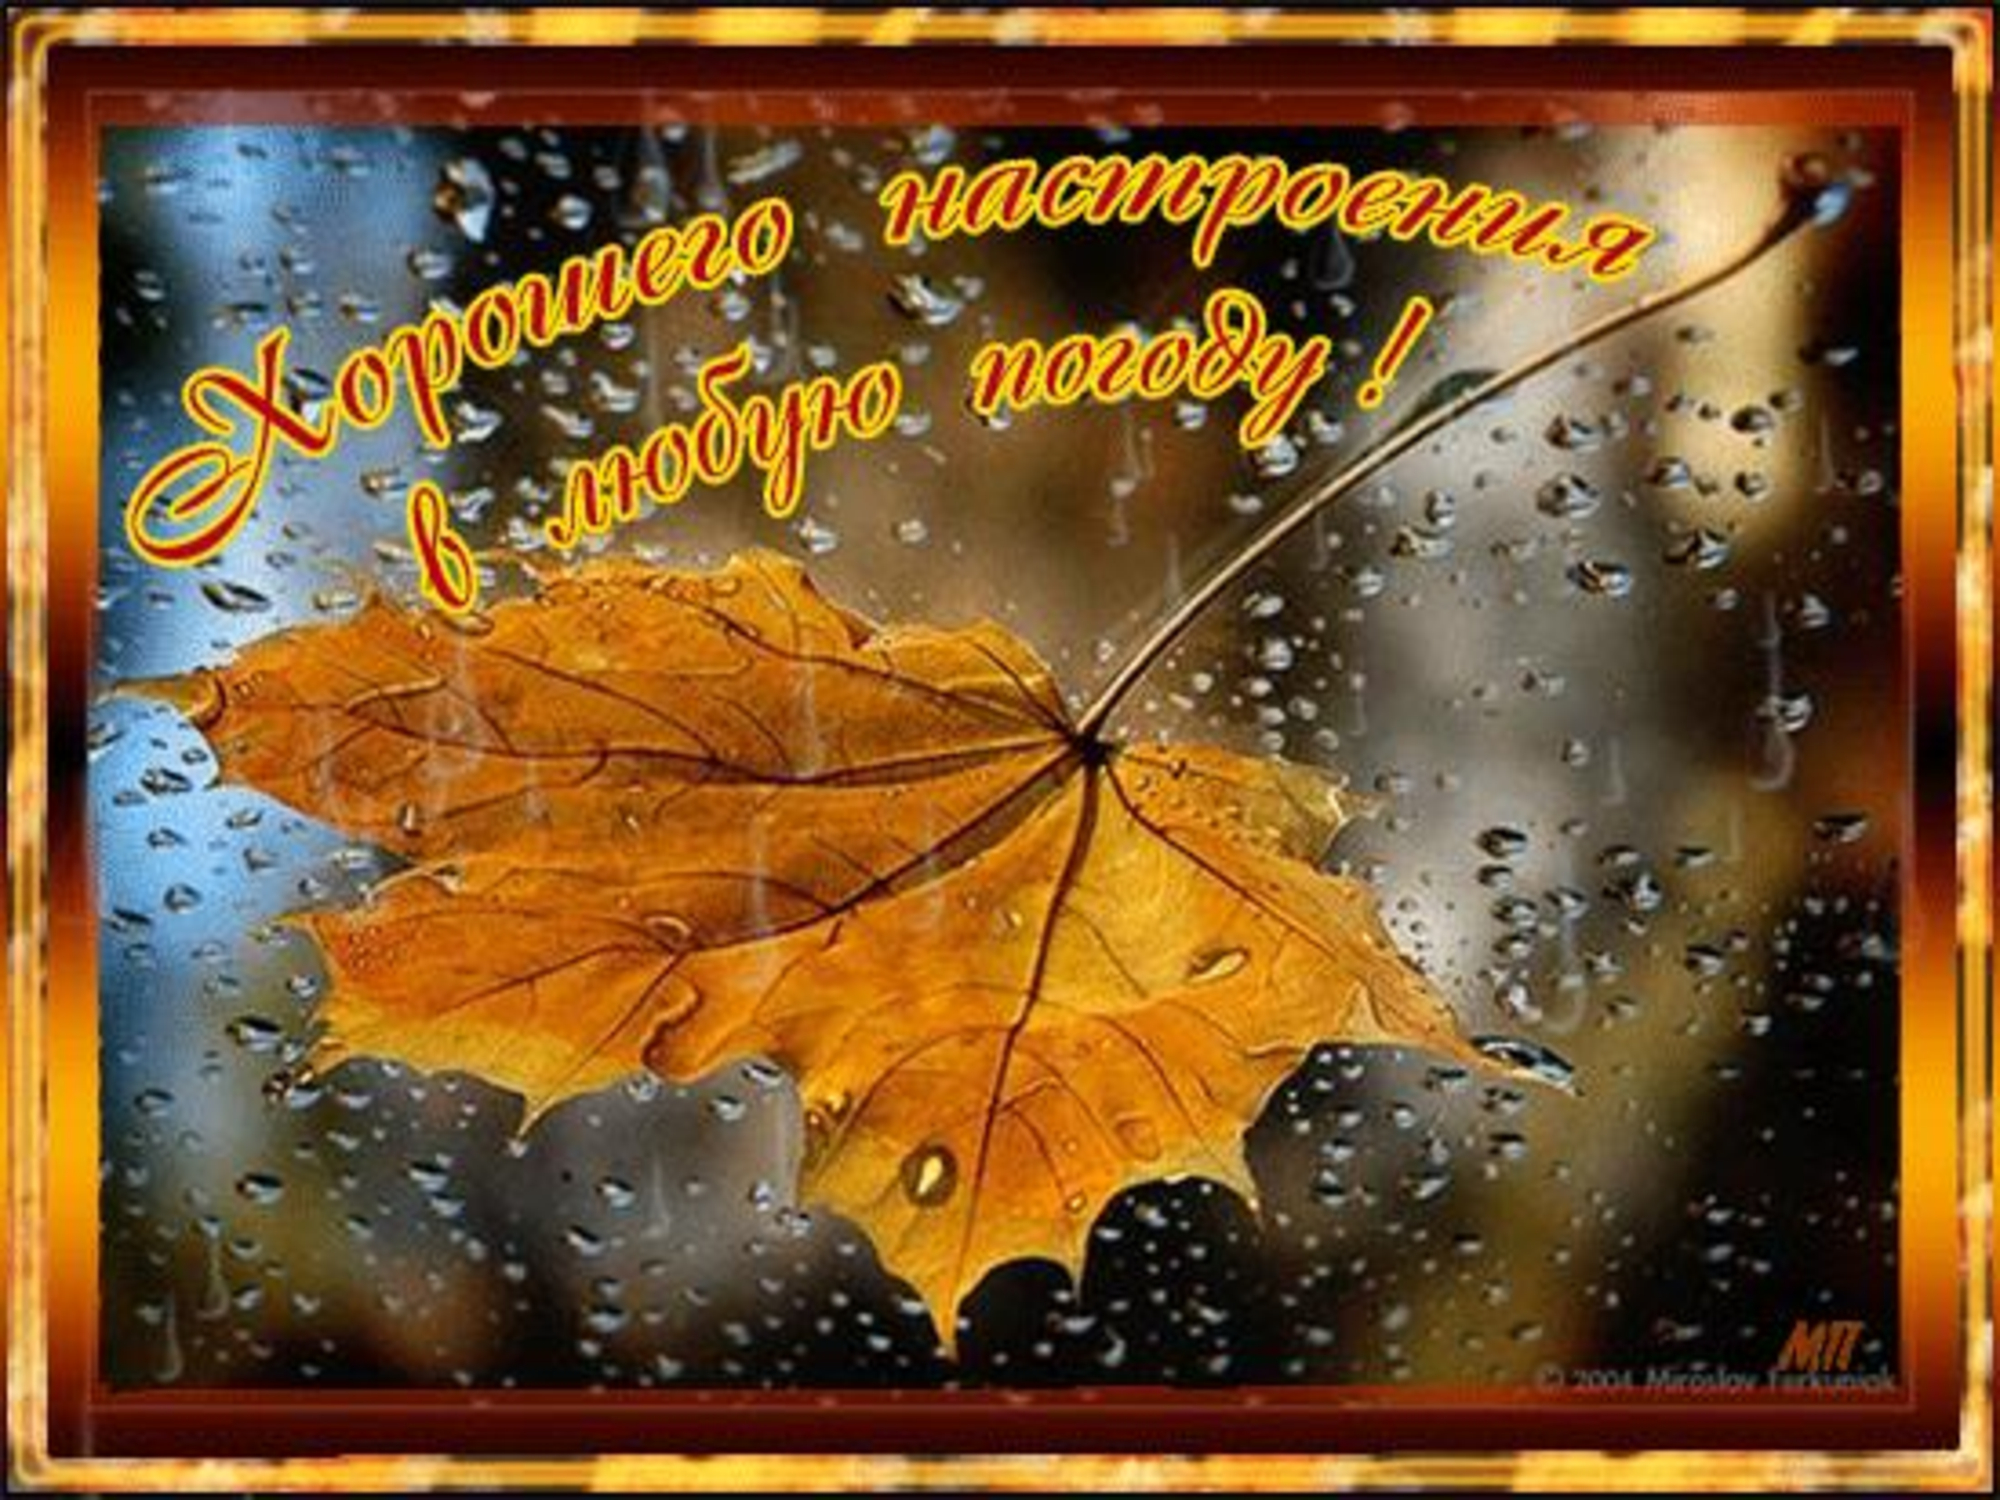 Настроения в любую погоду открытки. Осеннего настроения в любую погоду. Открытки хорошего настроения в любую погоду осенью. Хорошего настроения дождливой осенью. Открытка хорошего настроения в любую погоду осенняя.